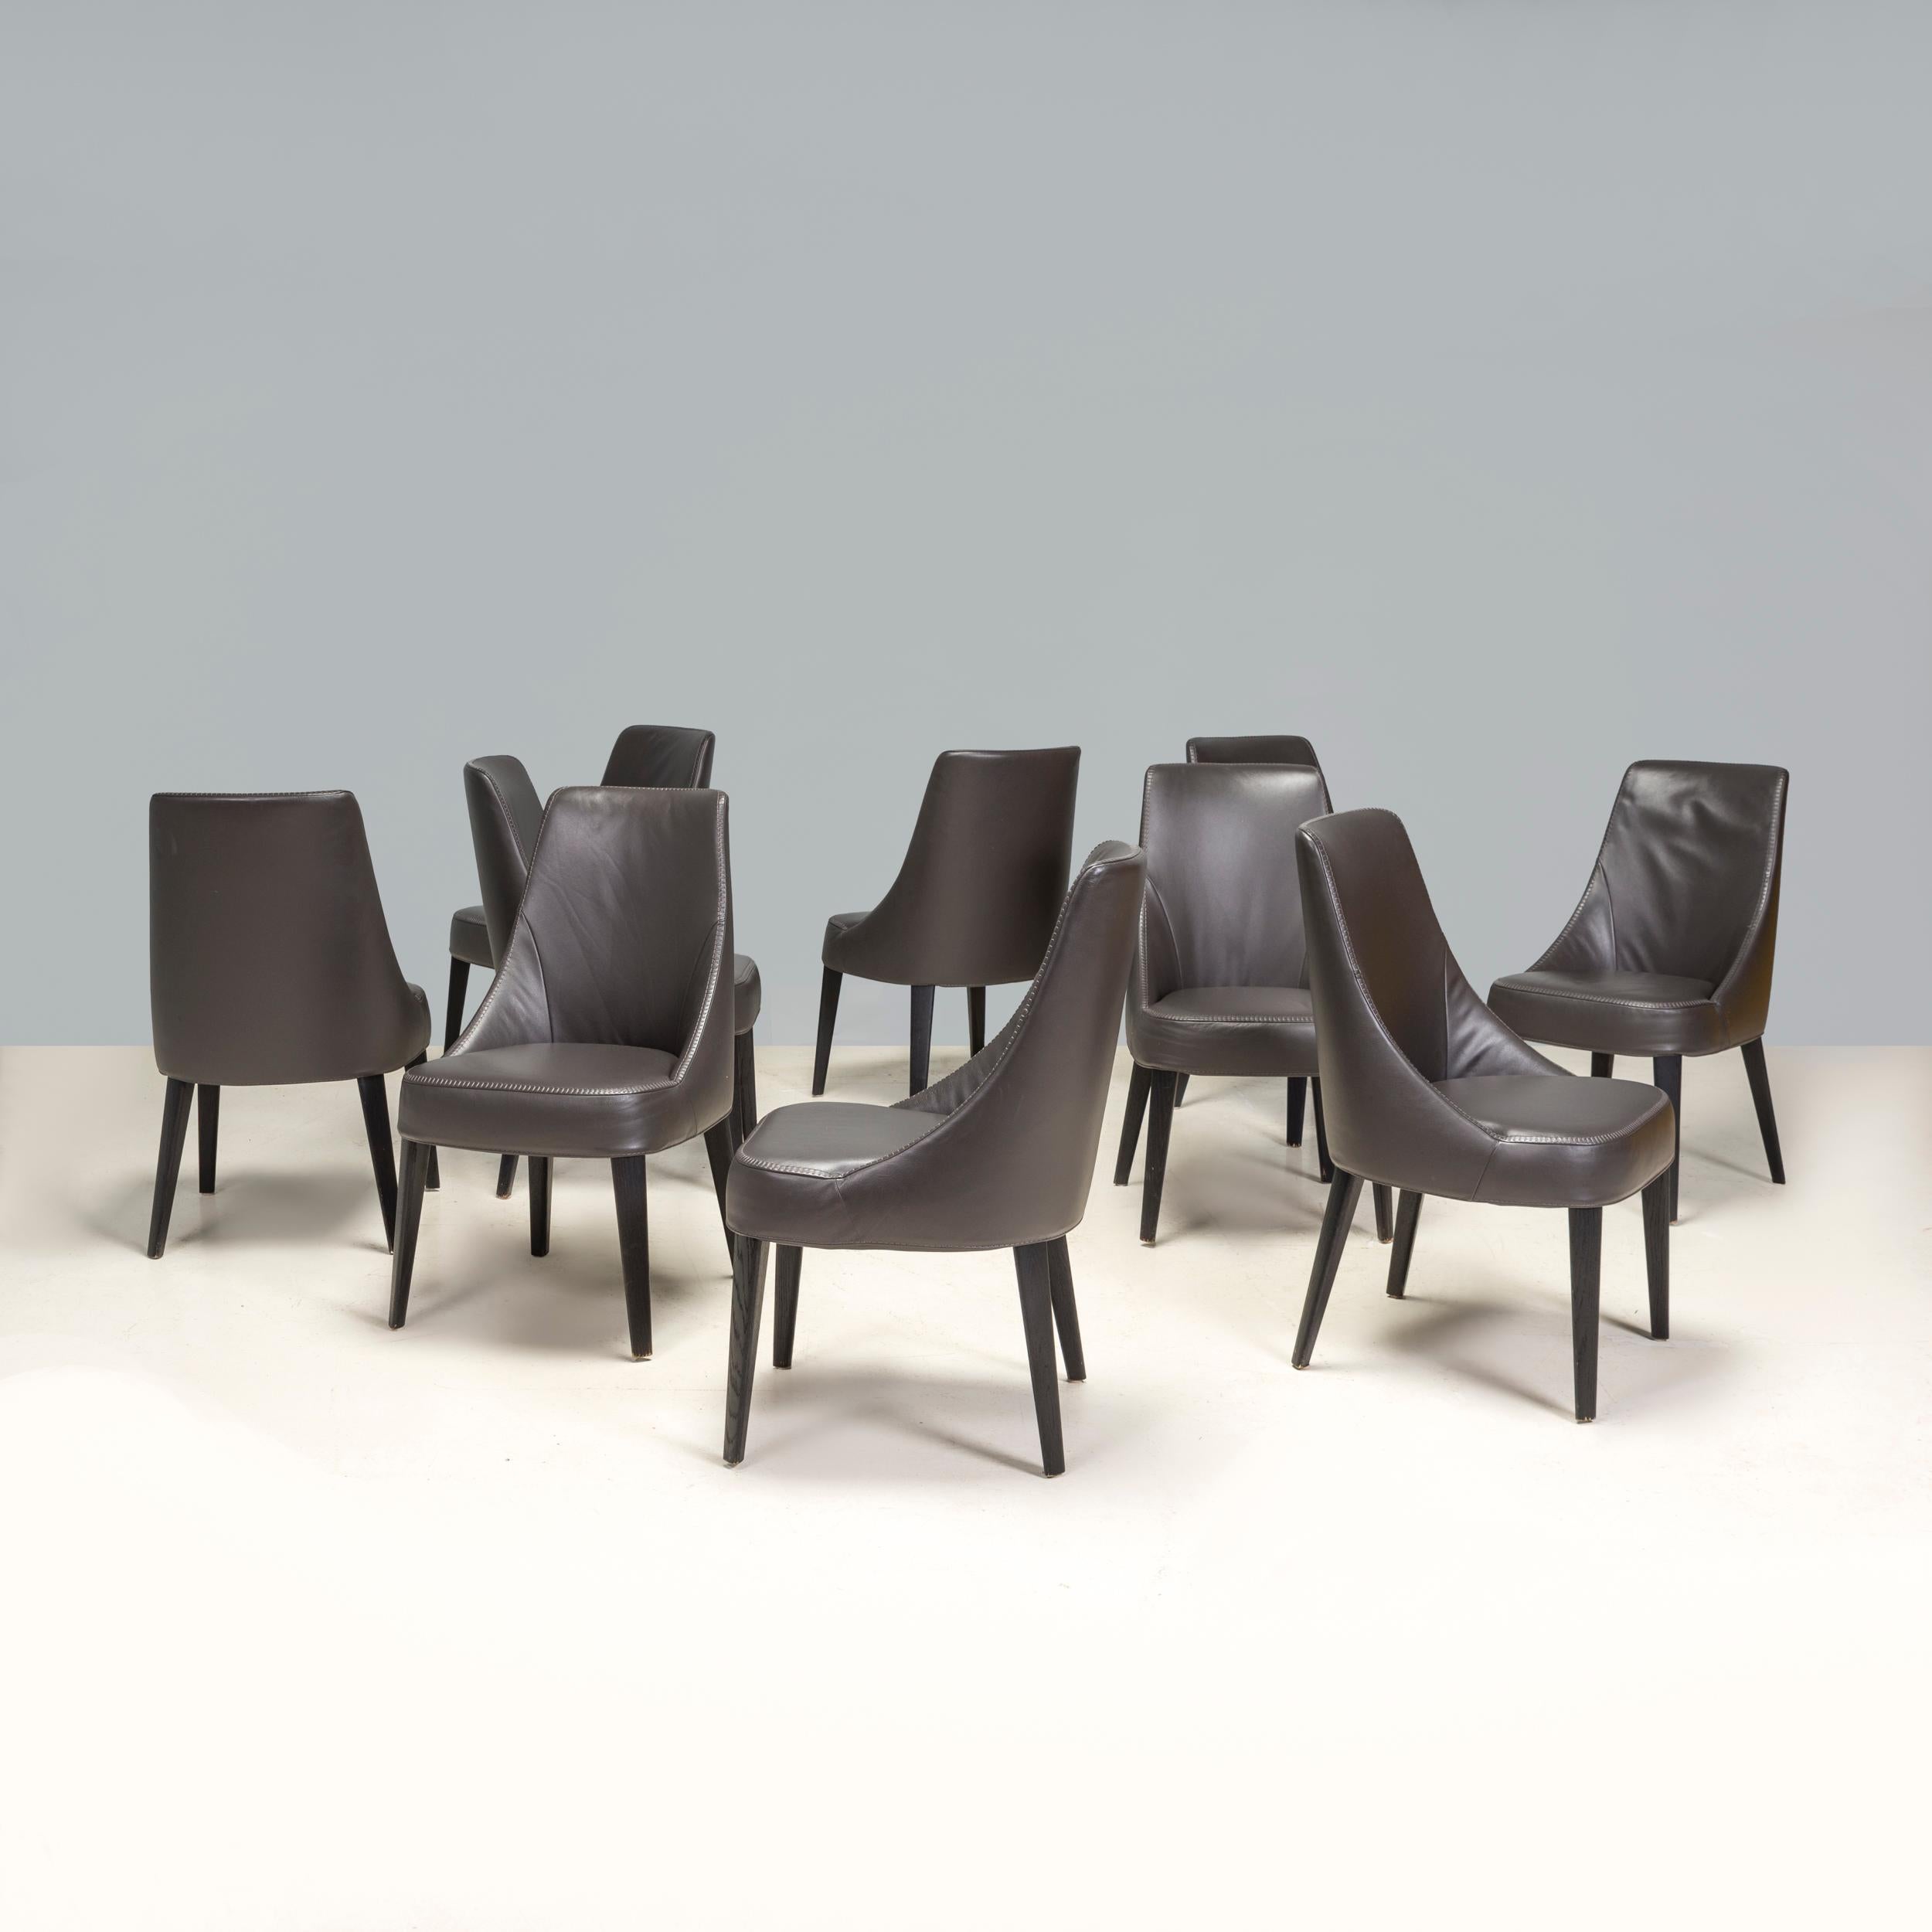 Der 2008 von Antonio Citterio für Maxalto entworfene Esszimmerstuhl Febo ist ein fantastisches Beispiel für modernes italienisches Design. 

Die Stühle bestehen aus einem Stahlrohrrahmen und sind mit dunkel gebeizten Holzbeinen versehen, die eine